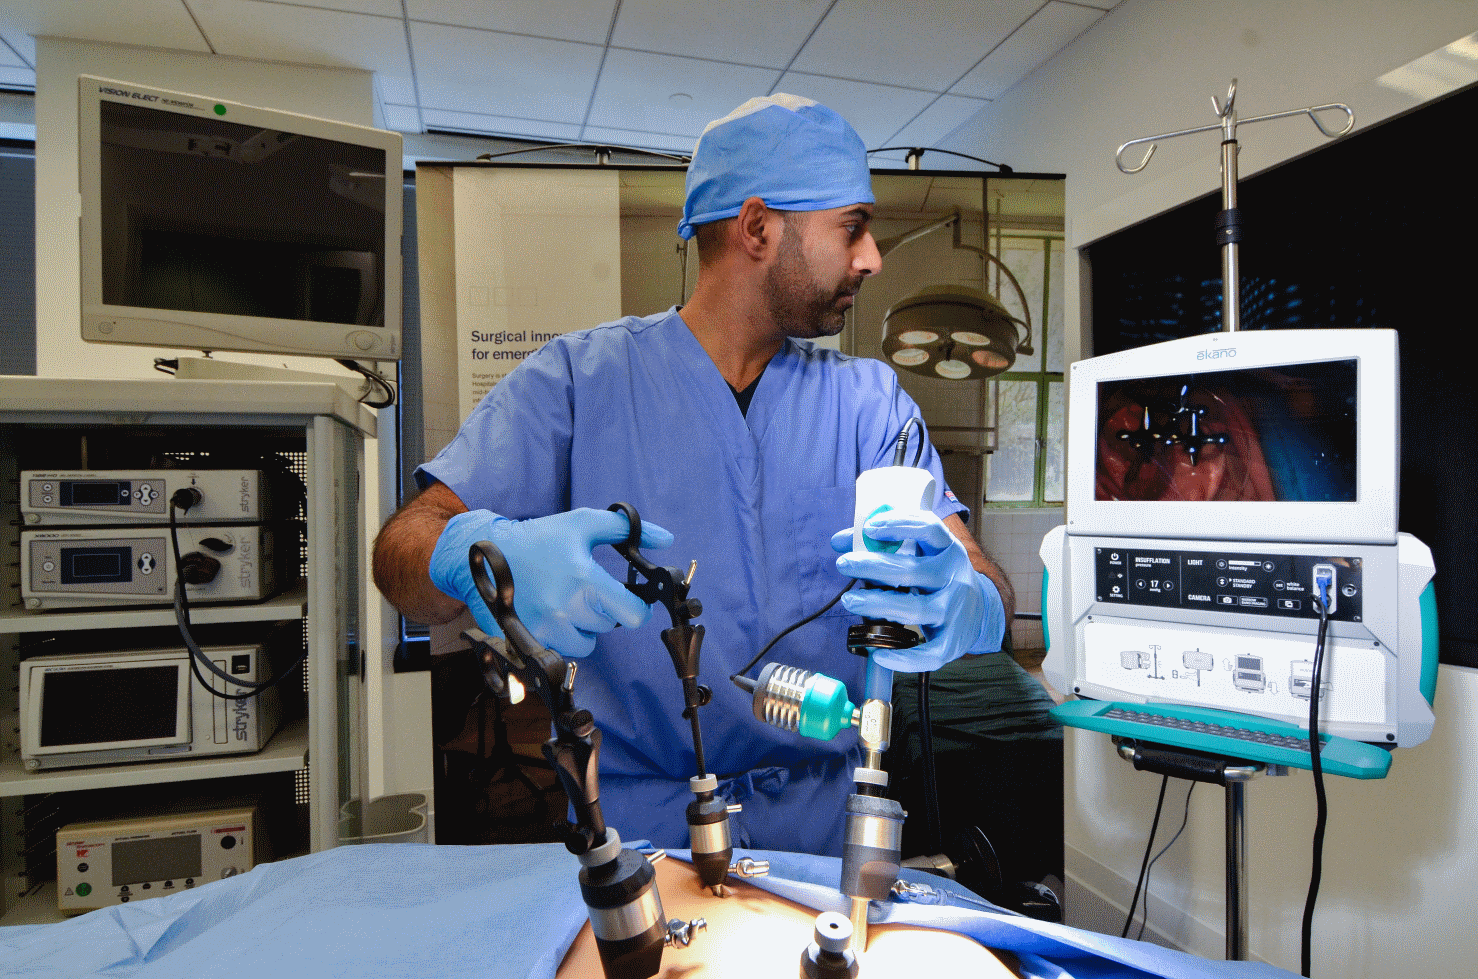 outils de la chirurgie laparoscopie Ekano